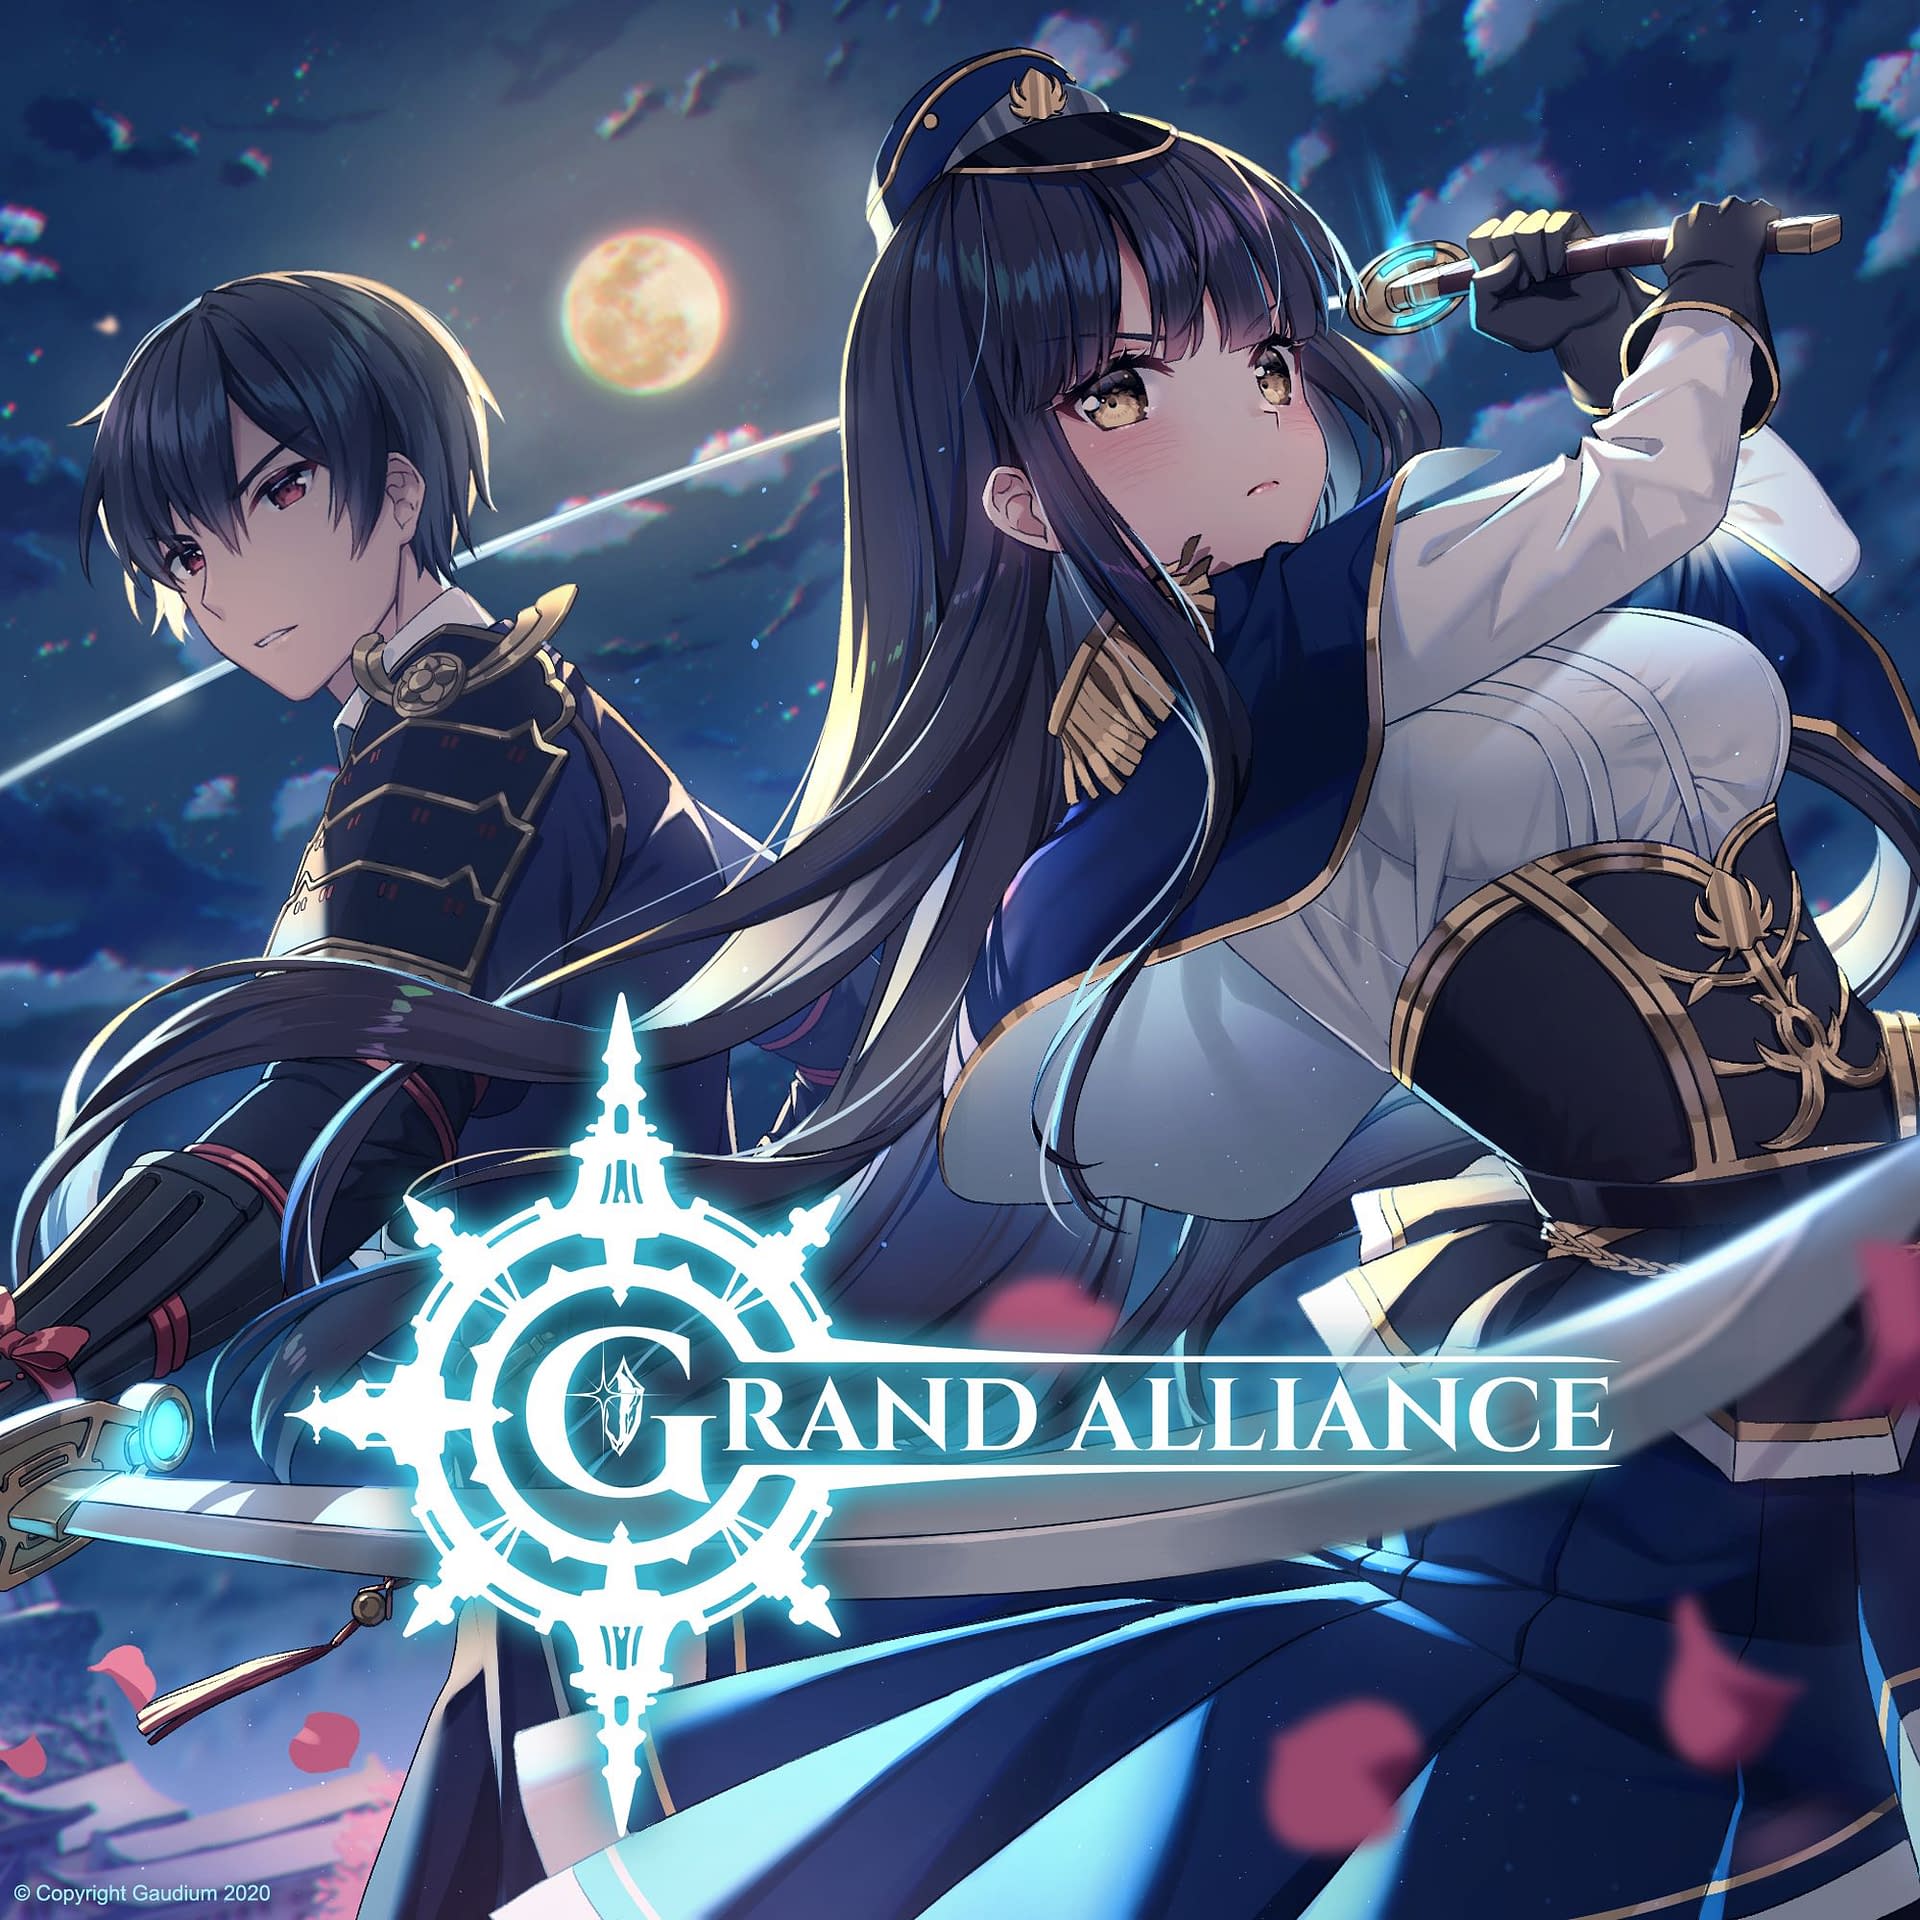 Crunchyroll Games Opens Pre-Reg on 'Grand Alliance' Anime-Inspired